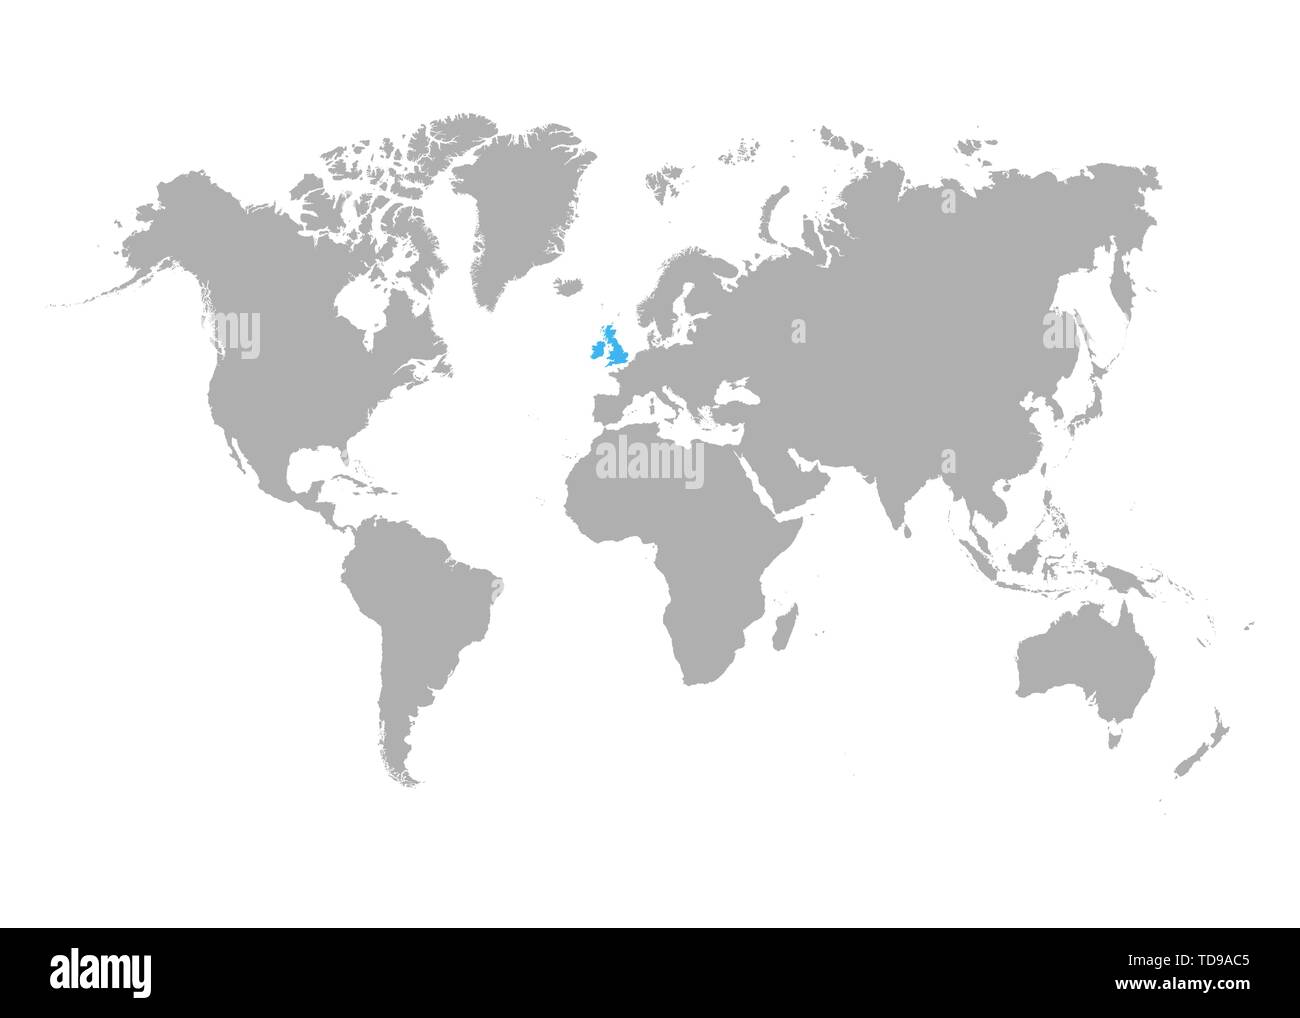 Die Karte von Großbritannien wird in Blau auf der Weltkarte markiert. Vektor Stock Vektor